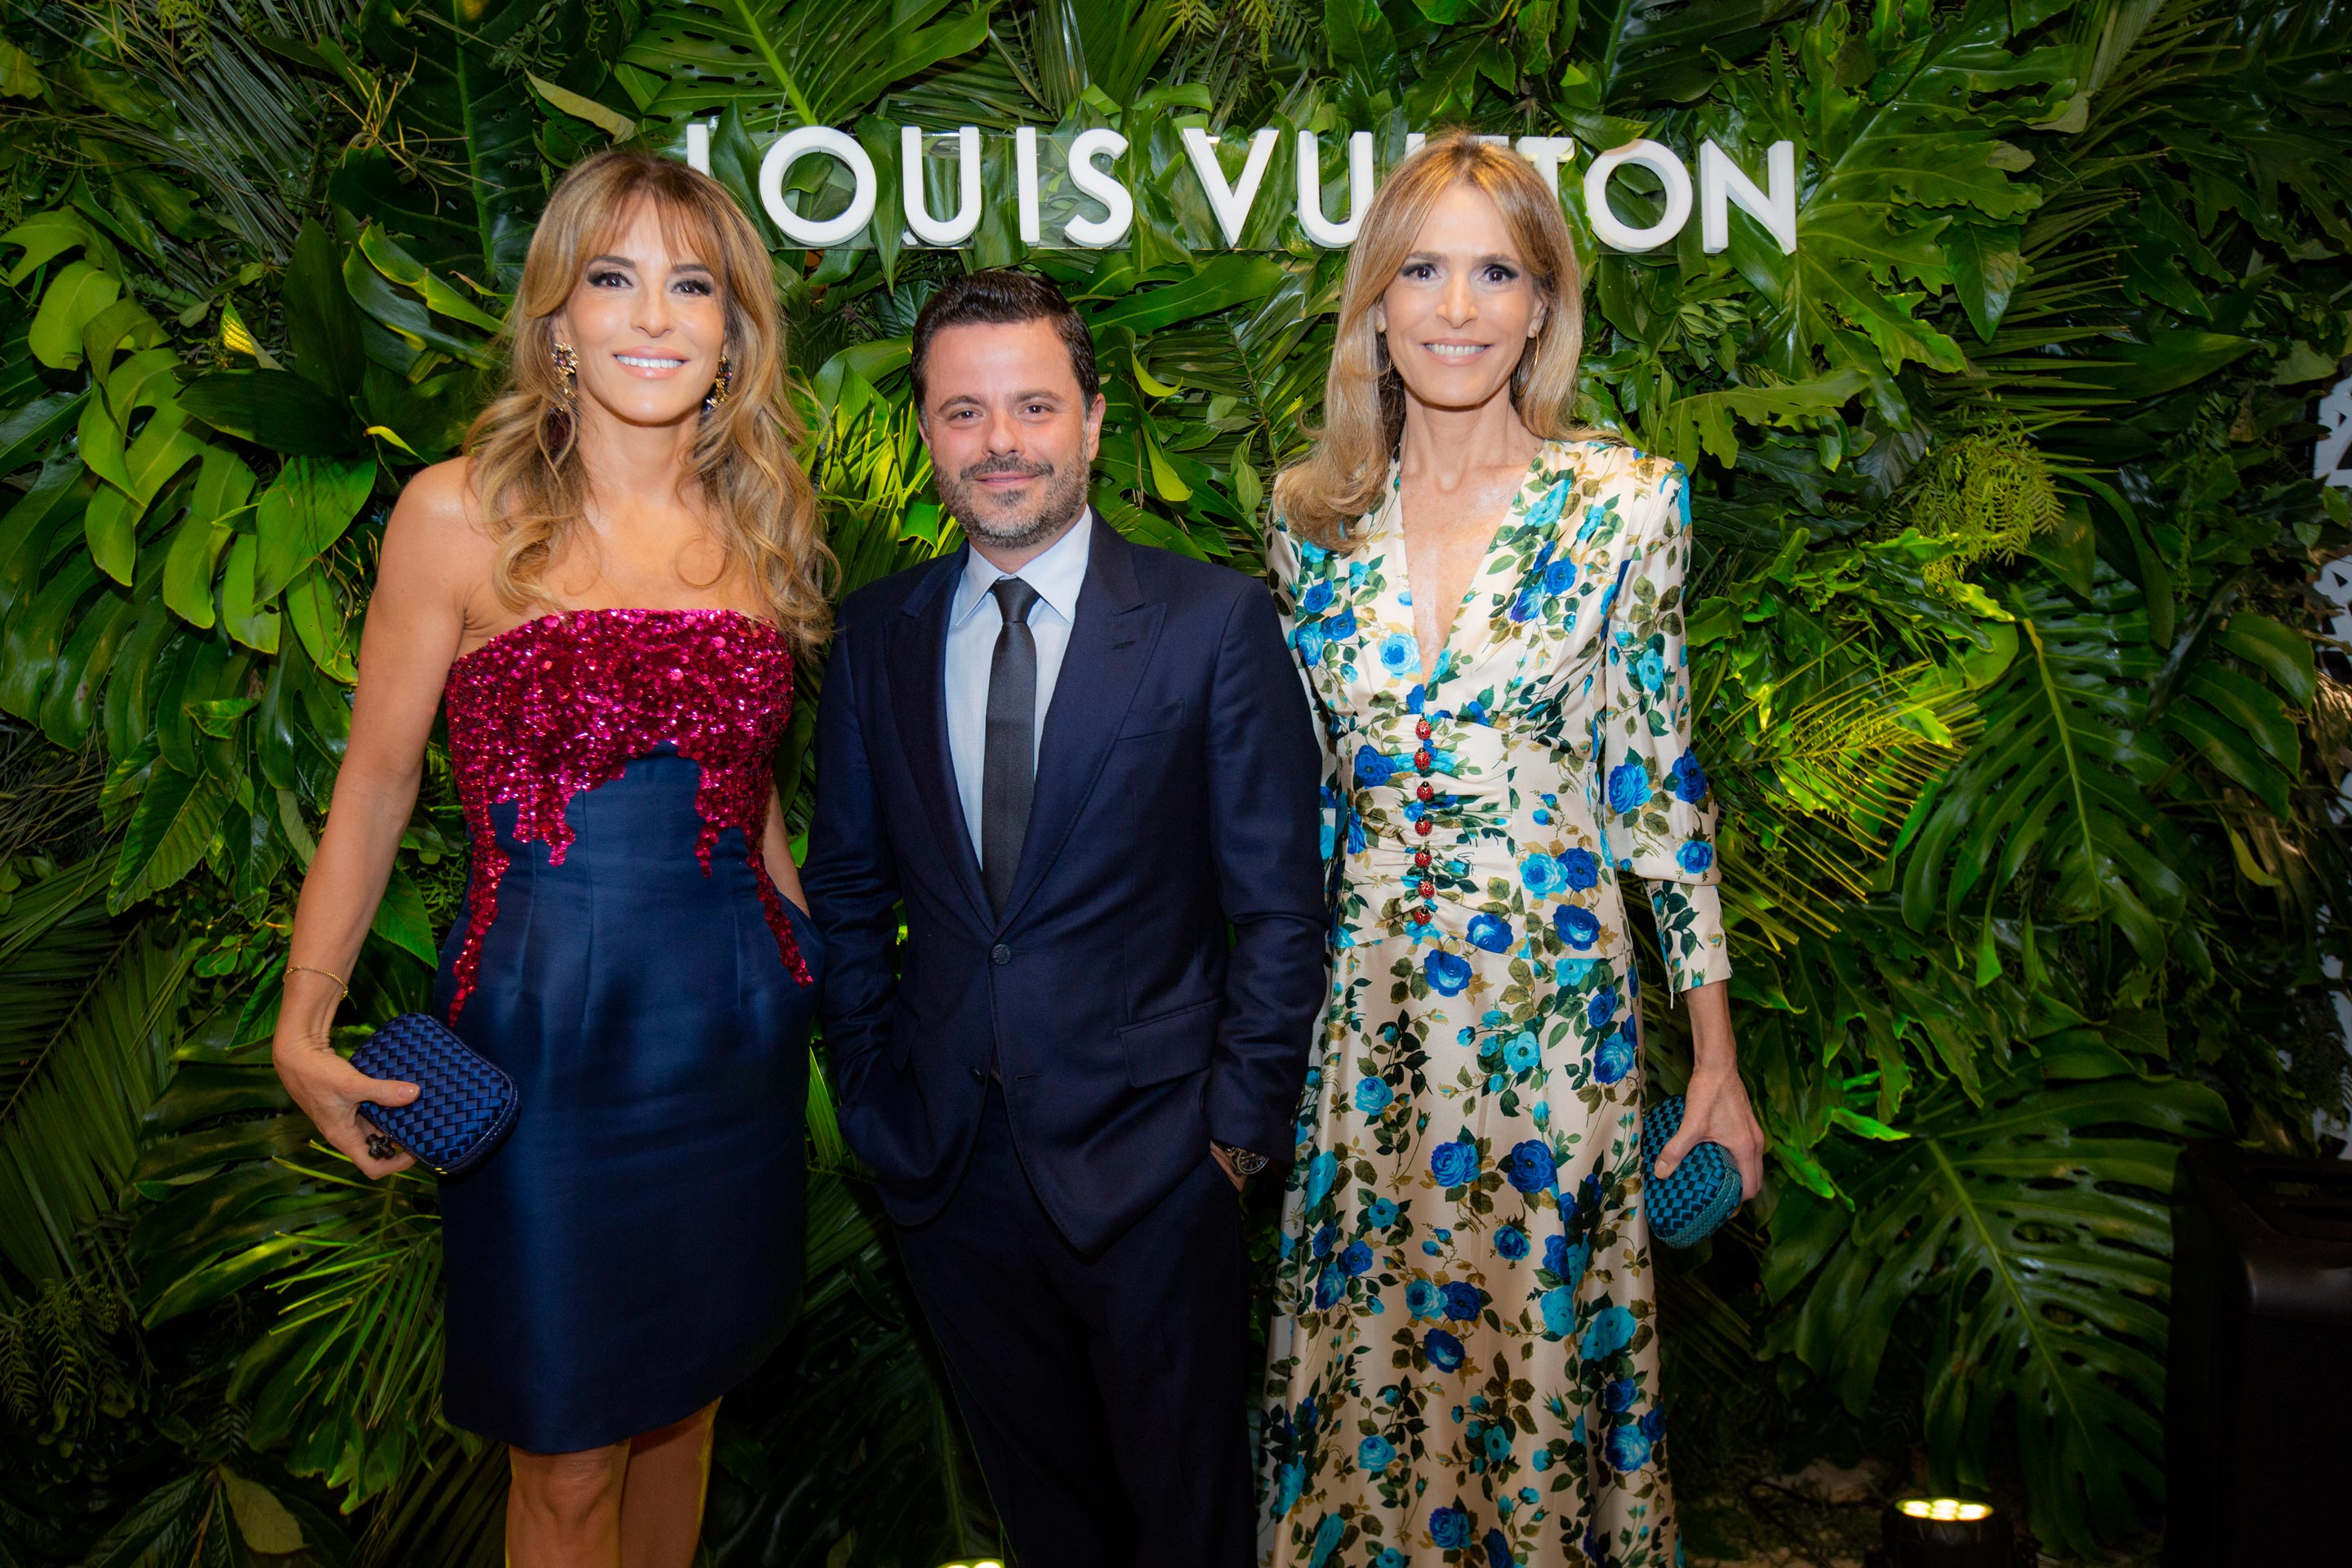 Louis Vuitton abrió su primer pop up store en Argentina